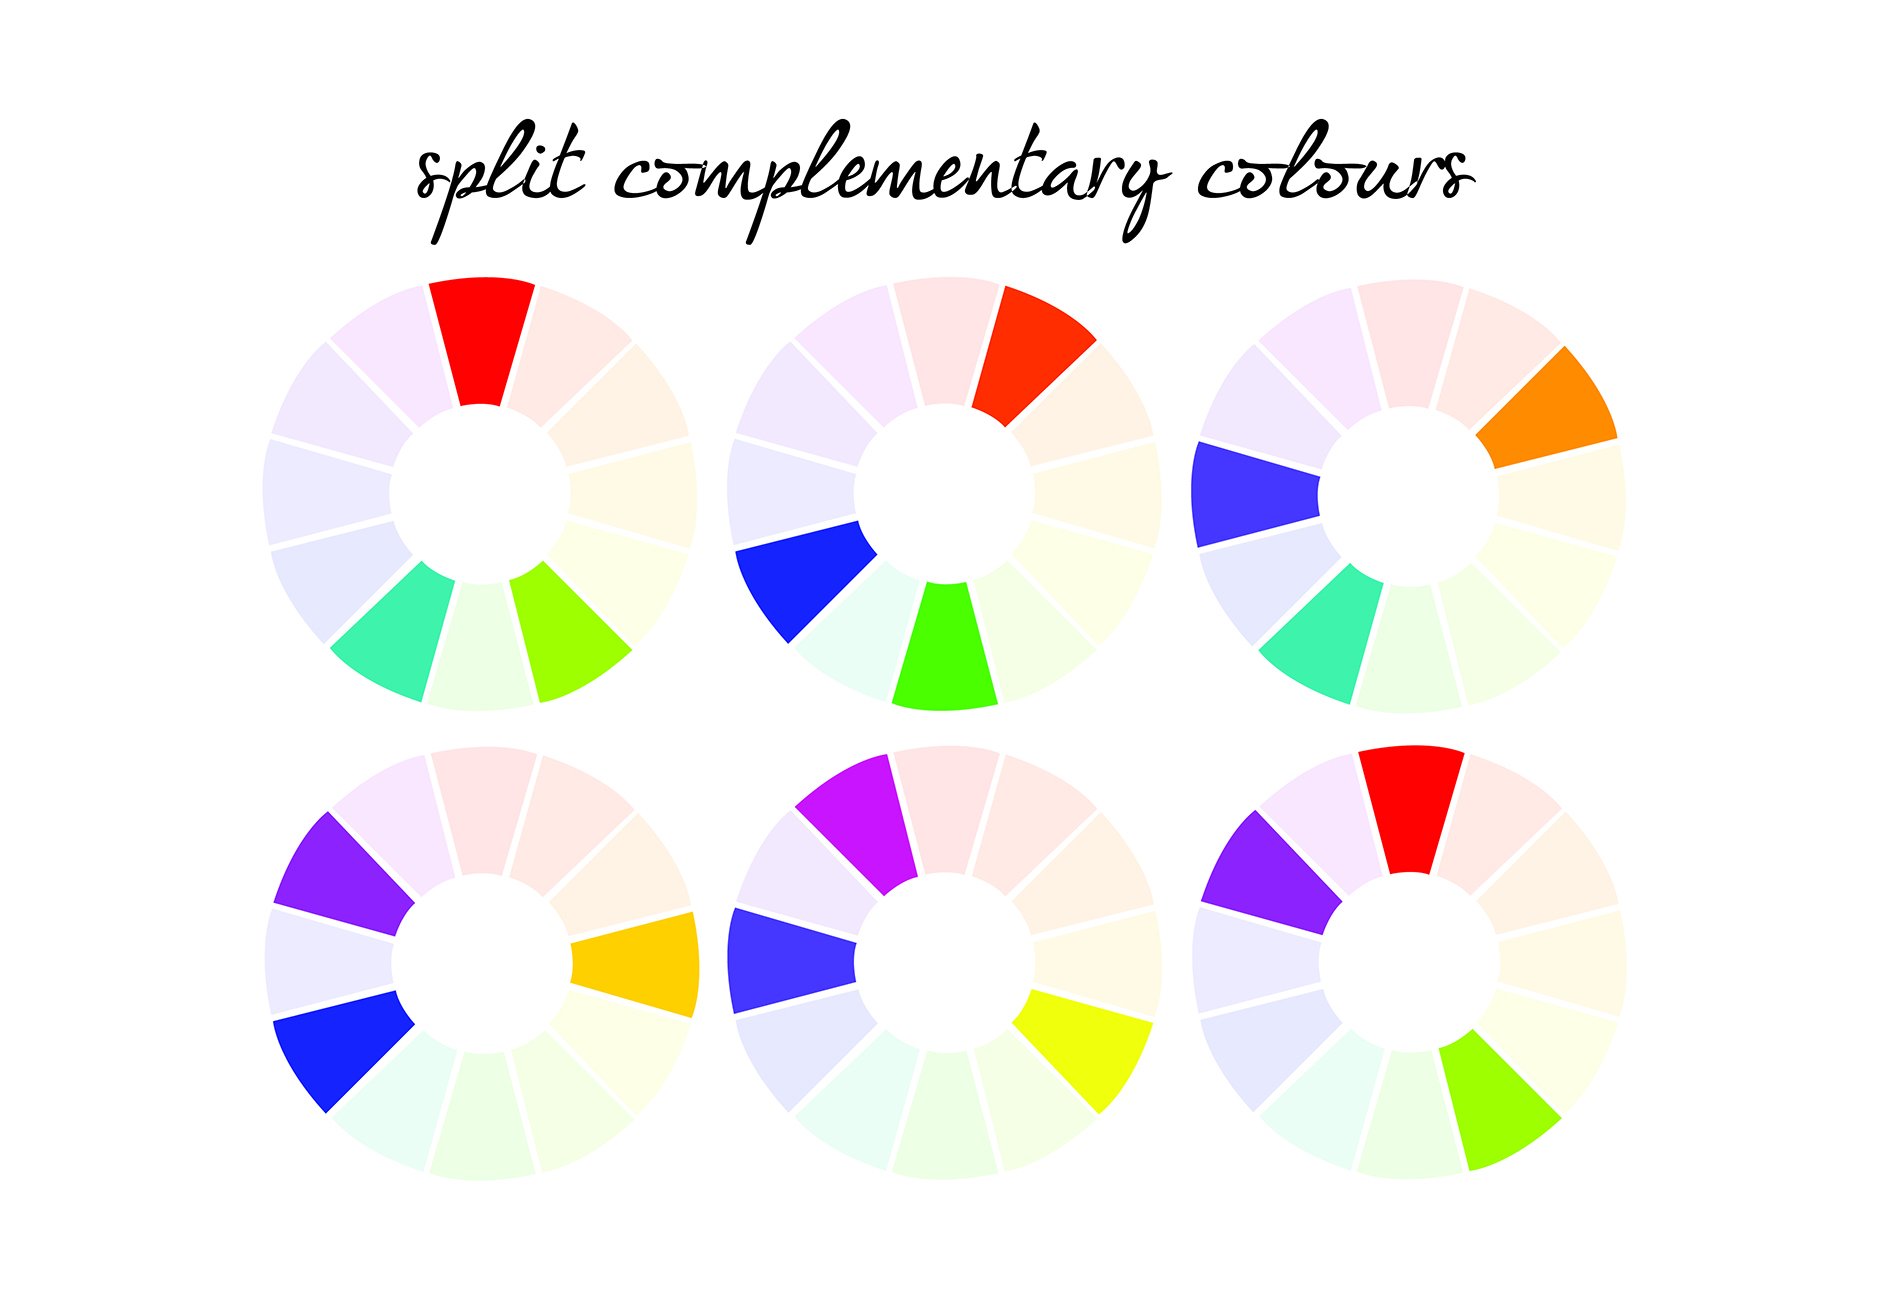 Комплиментарные слова. Сплит комплементарная цветовая схема. Круг Иттена комплиментарные цвета. Сплит комплиментарная схема. Комплементарные цвета в цветовом круге.